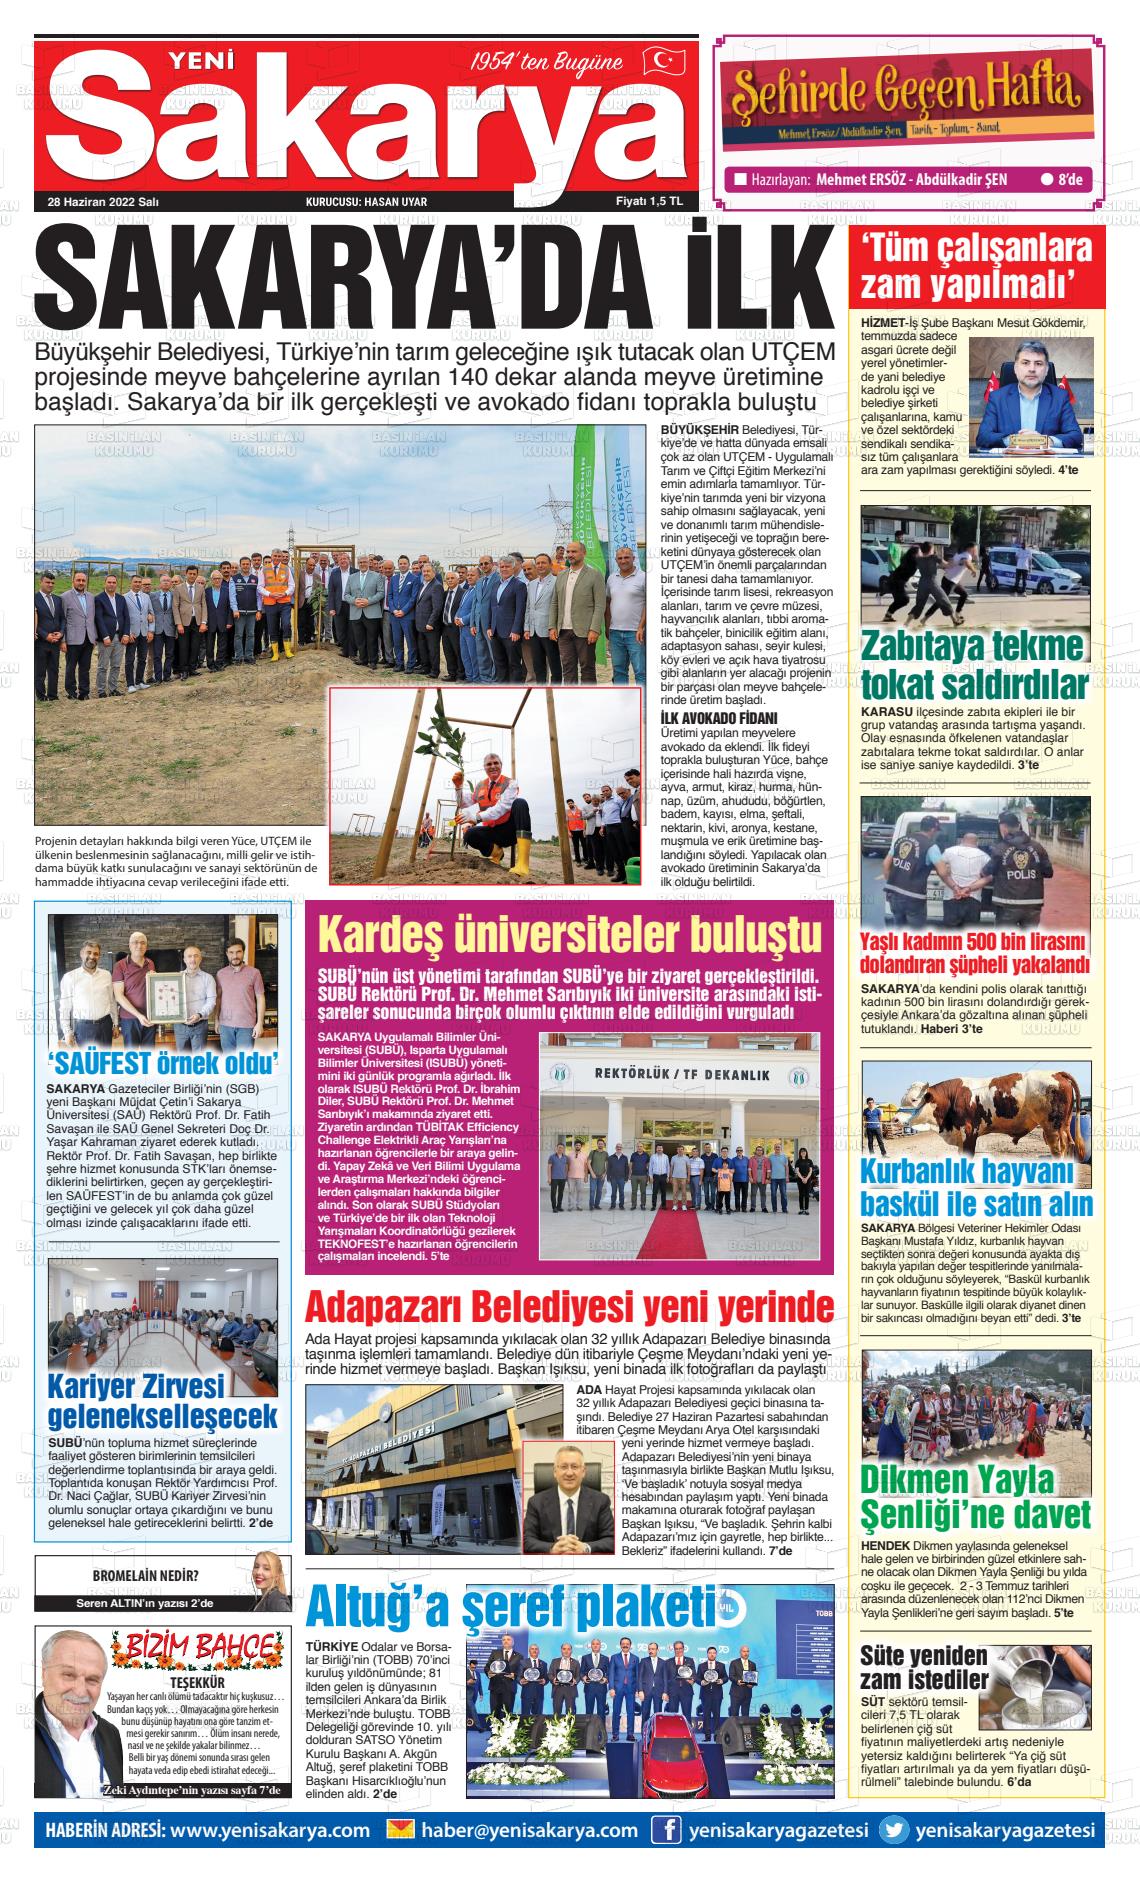 28 Haziran 2022 Yeni Sakarya Gazete Manşeti